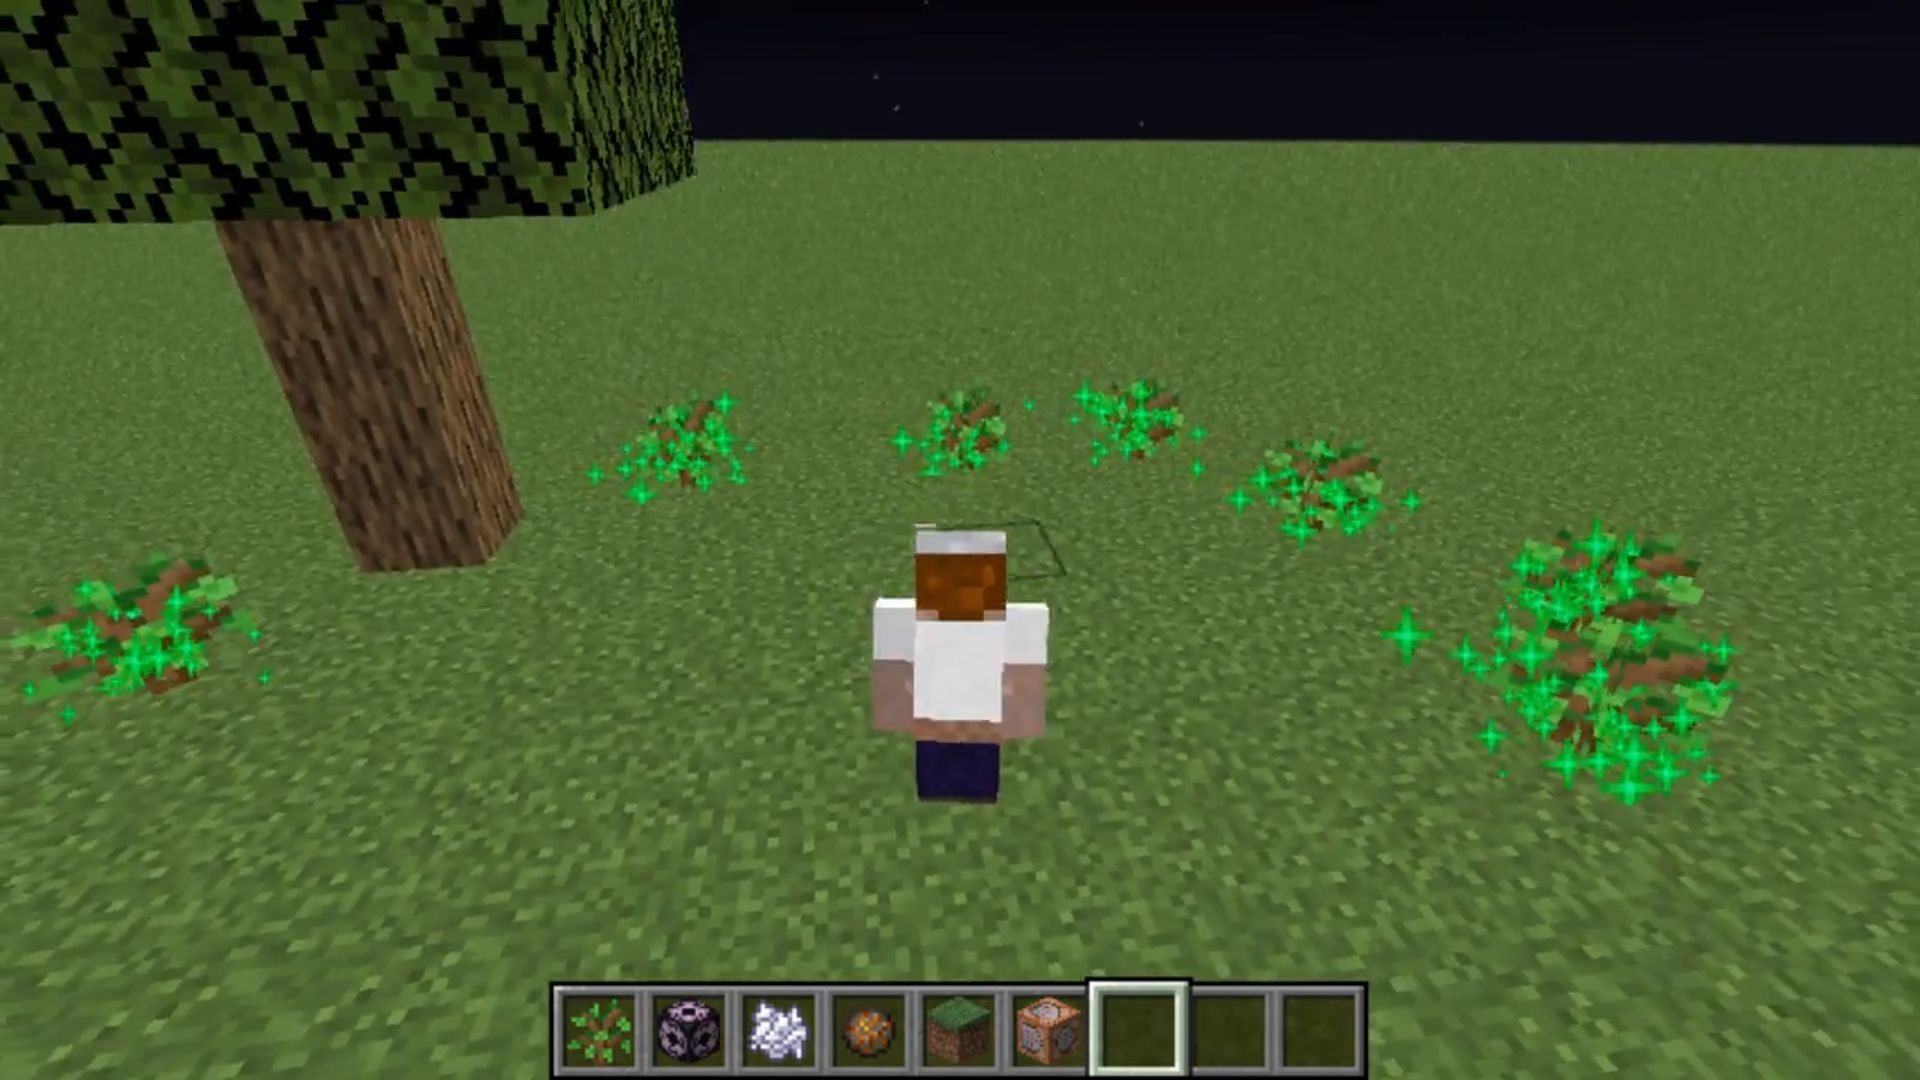 Twerk sim mod enables trees to grow when players twerk near them in Minecraft (Image via Reddit/u/HoboMaggot)